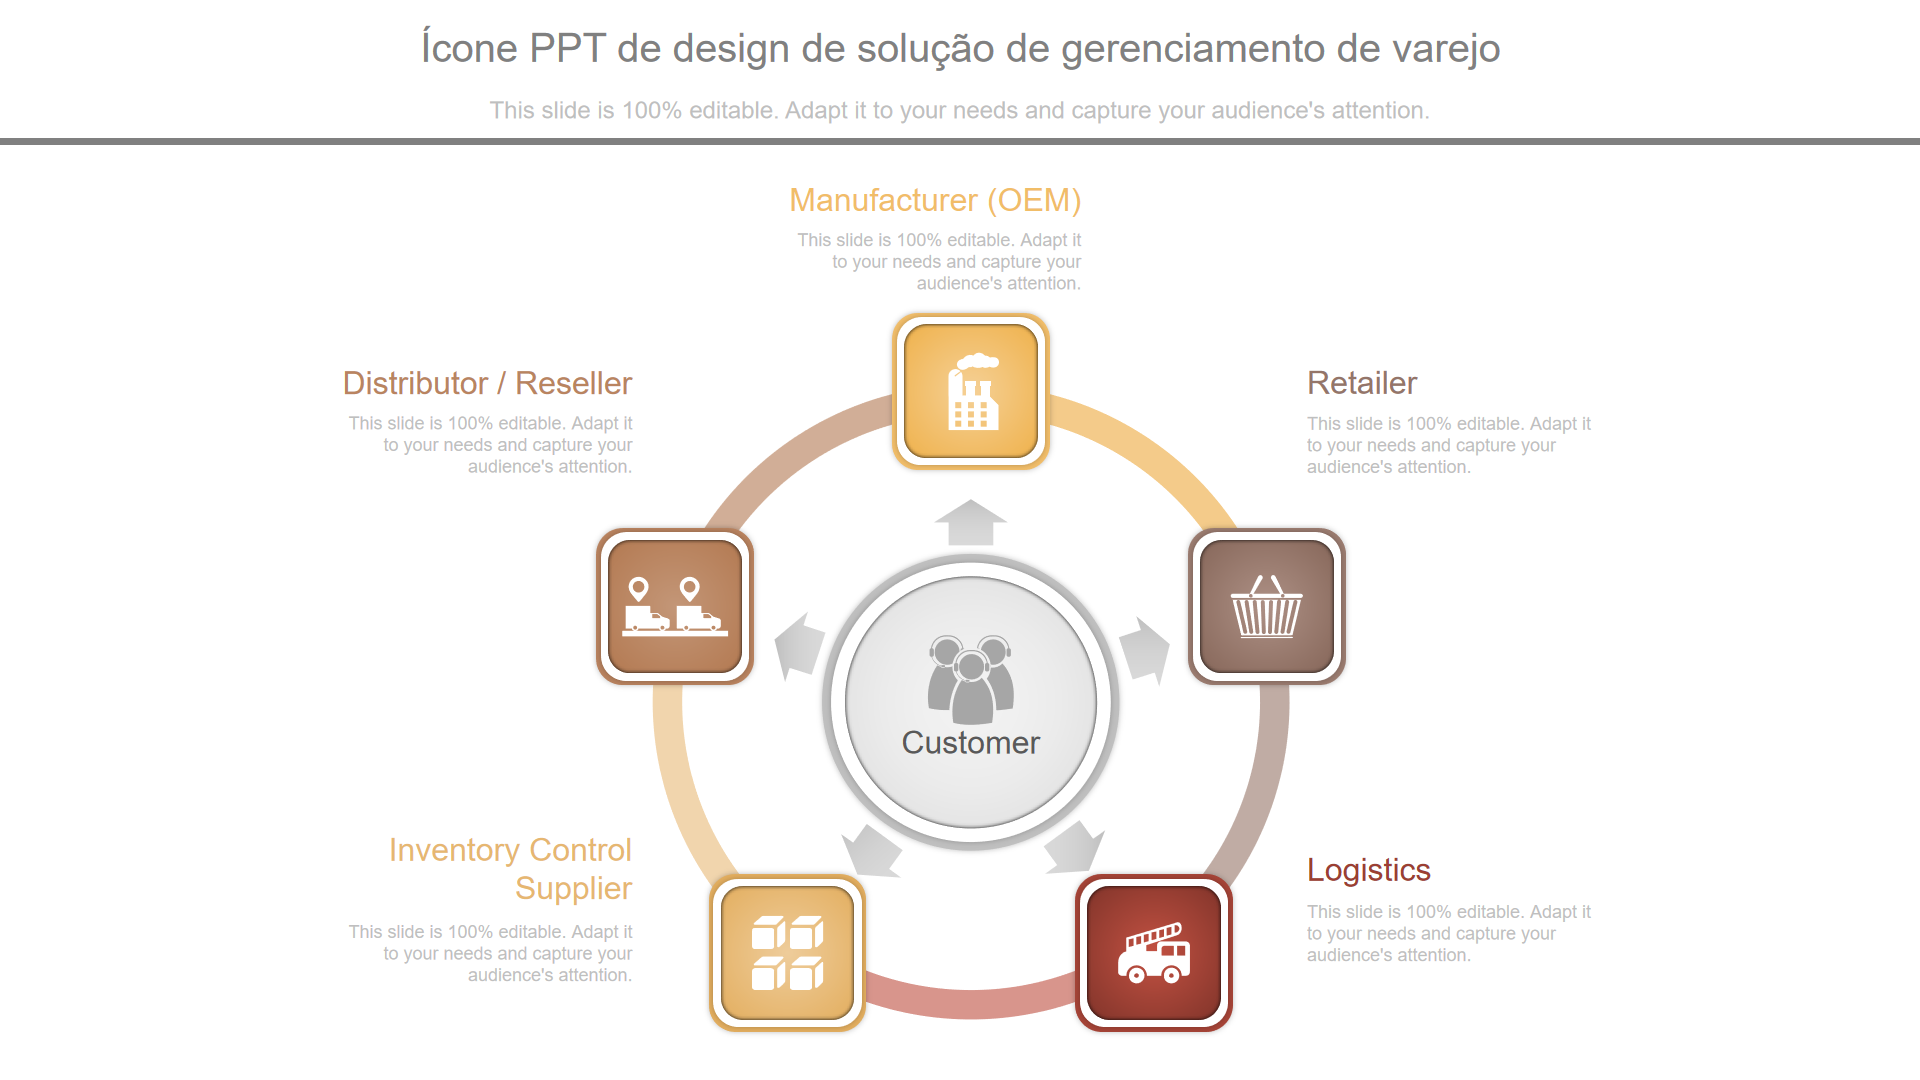 Ícone PPT de design de solução de gerenciamento de varejo